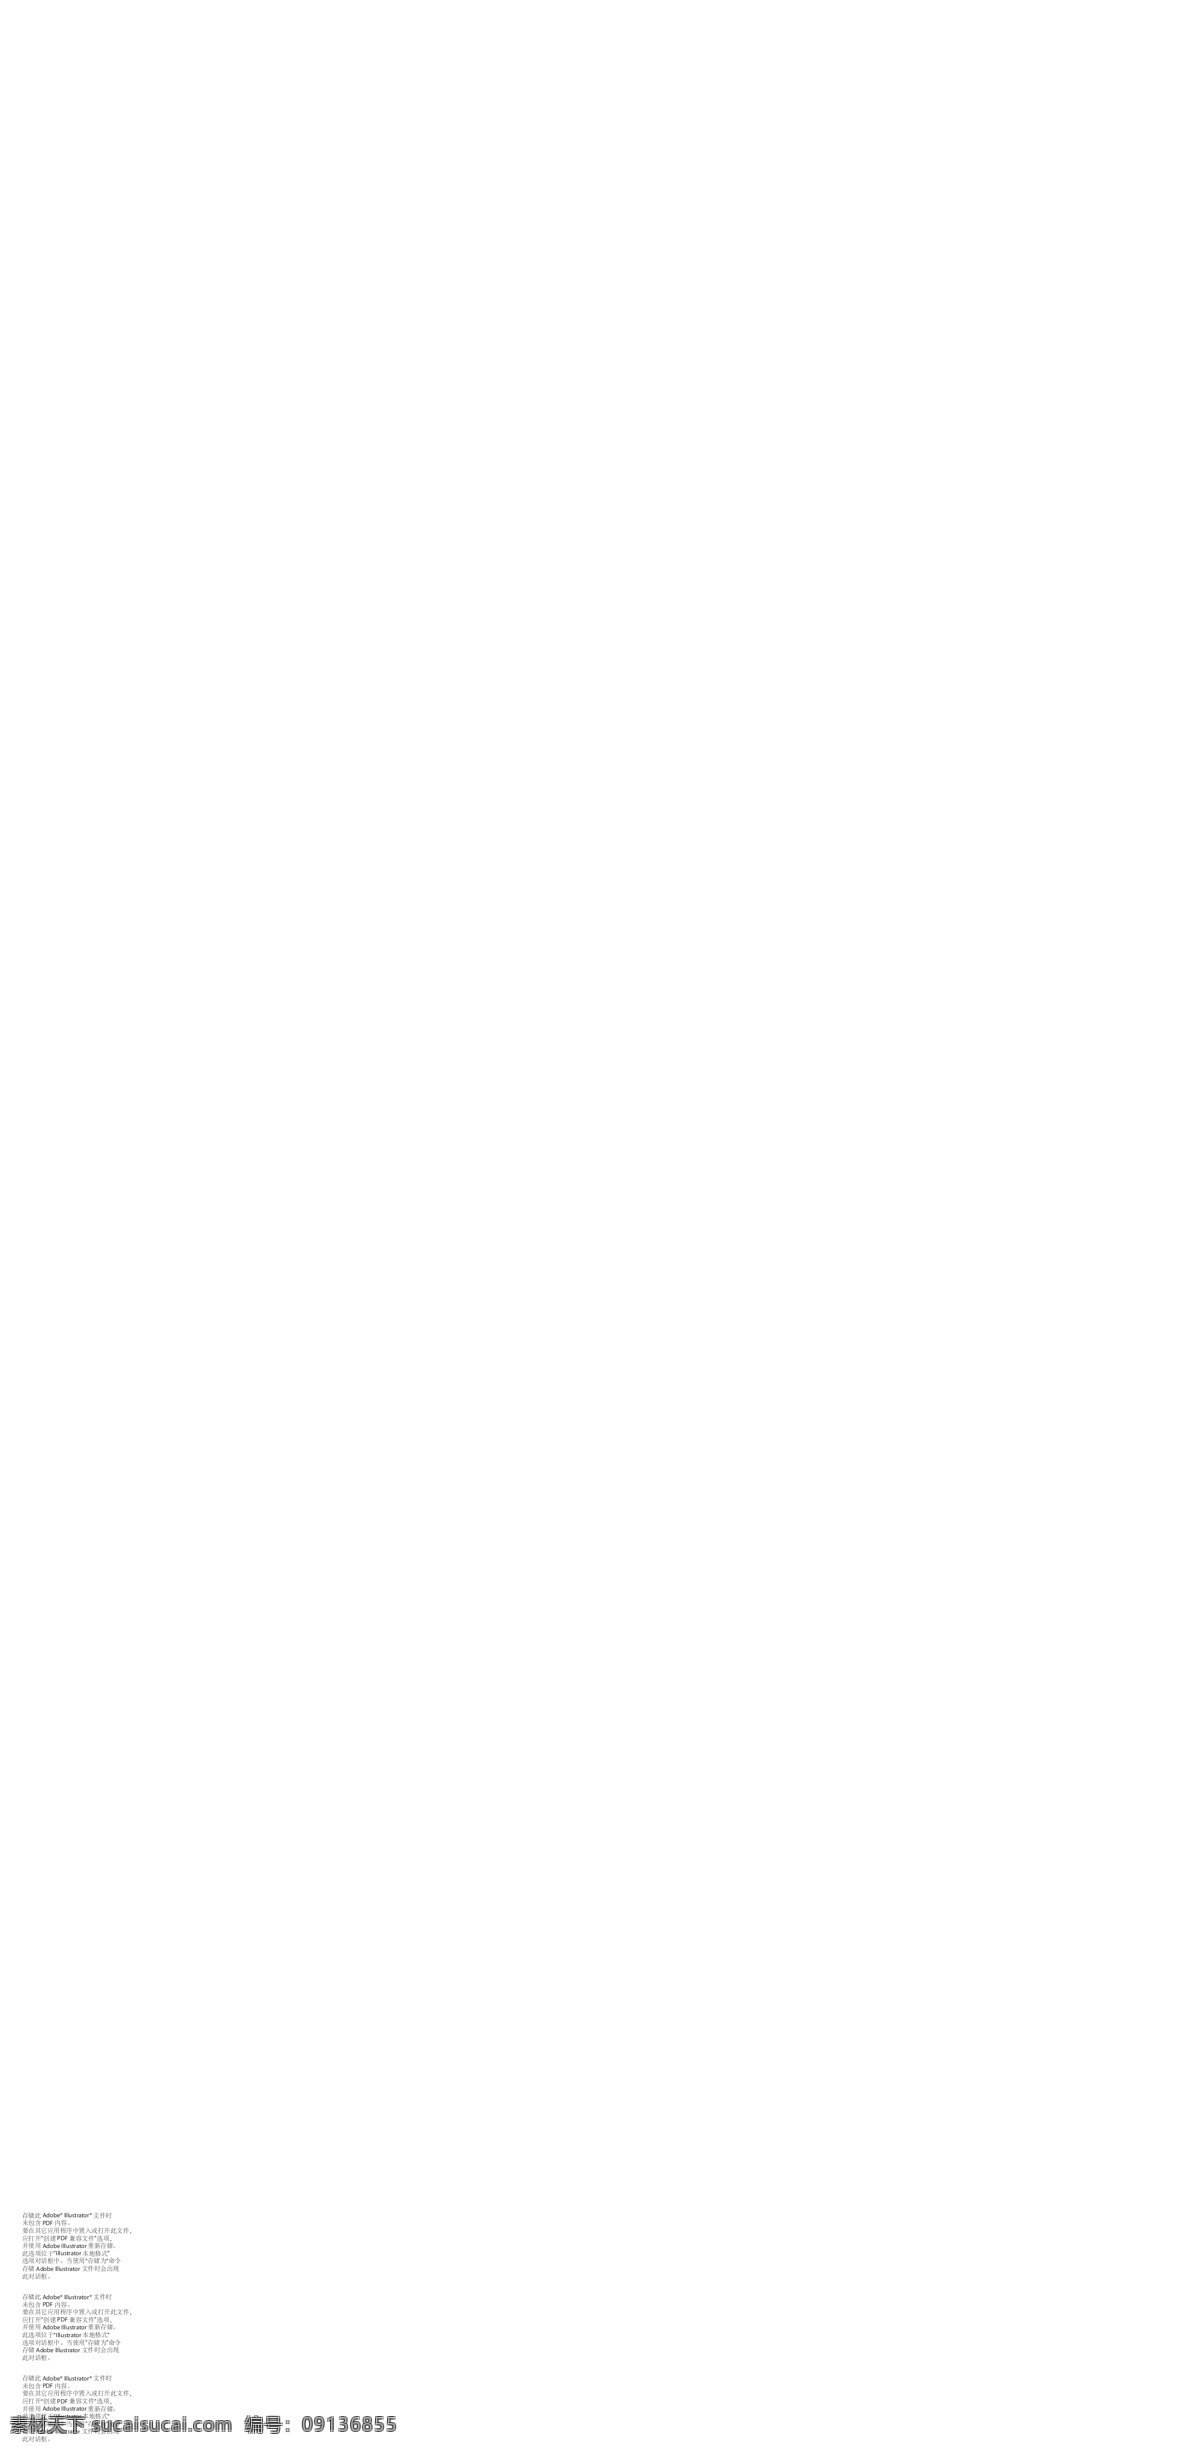 百货业 logo 百货logo 零售业 服装logo 男女 装 童装logo 少 淑女装 鞋 化妆品 内衣 配饰 皮具 运动休闲 企业 标志 标识标志图标 矢量